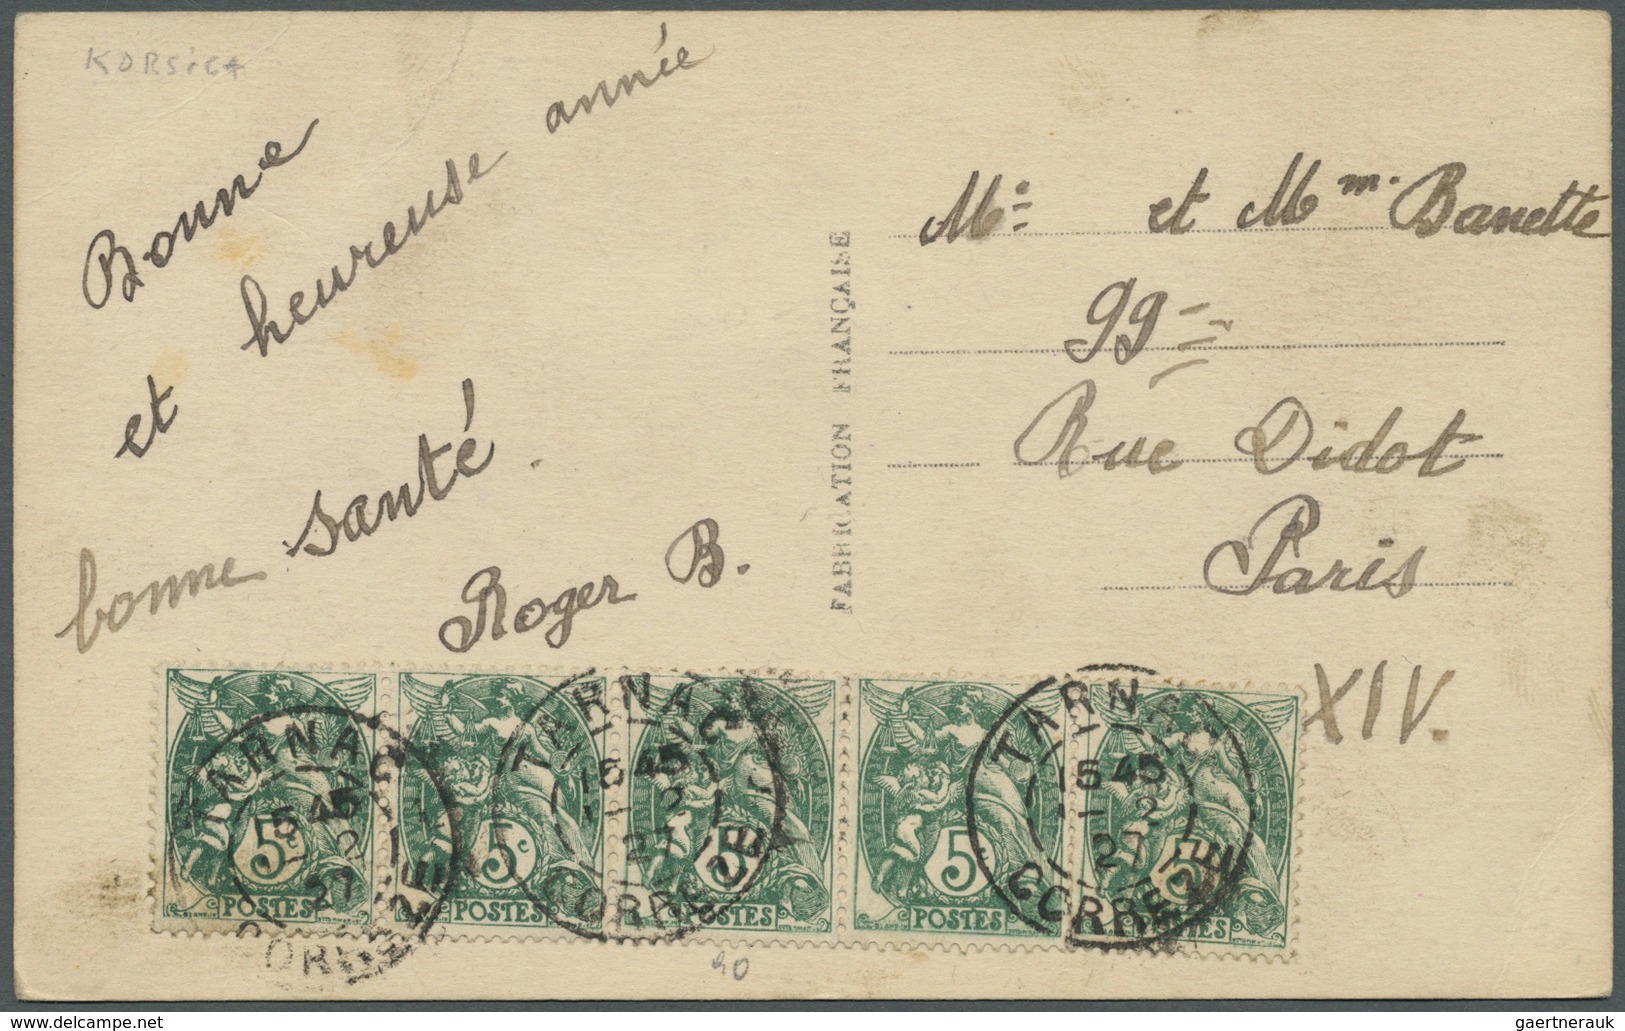 Br Frankreich: 1902/1932, Type Blanc, vielseitige Partie von über 70 Briefen/Karten/Ansichtskarten, dab